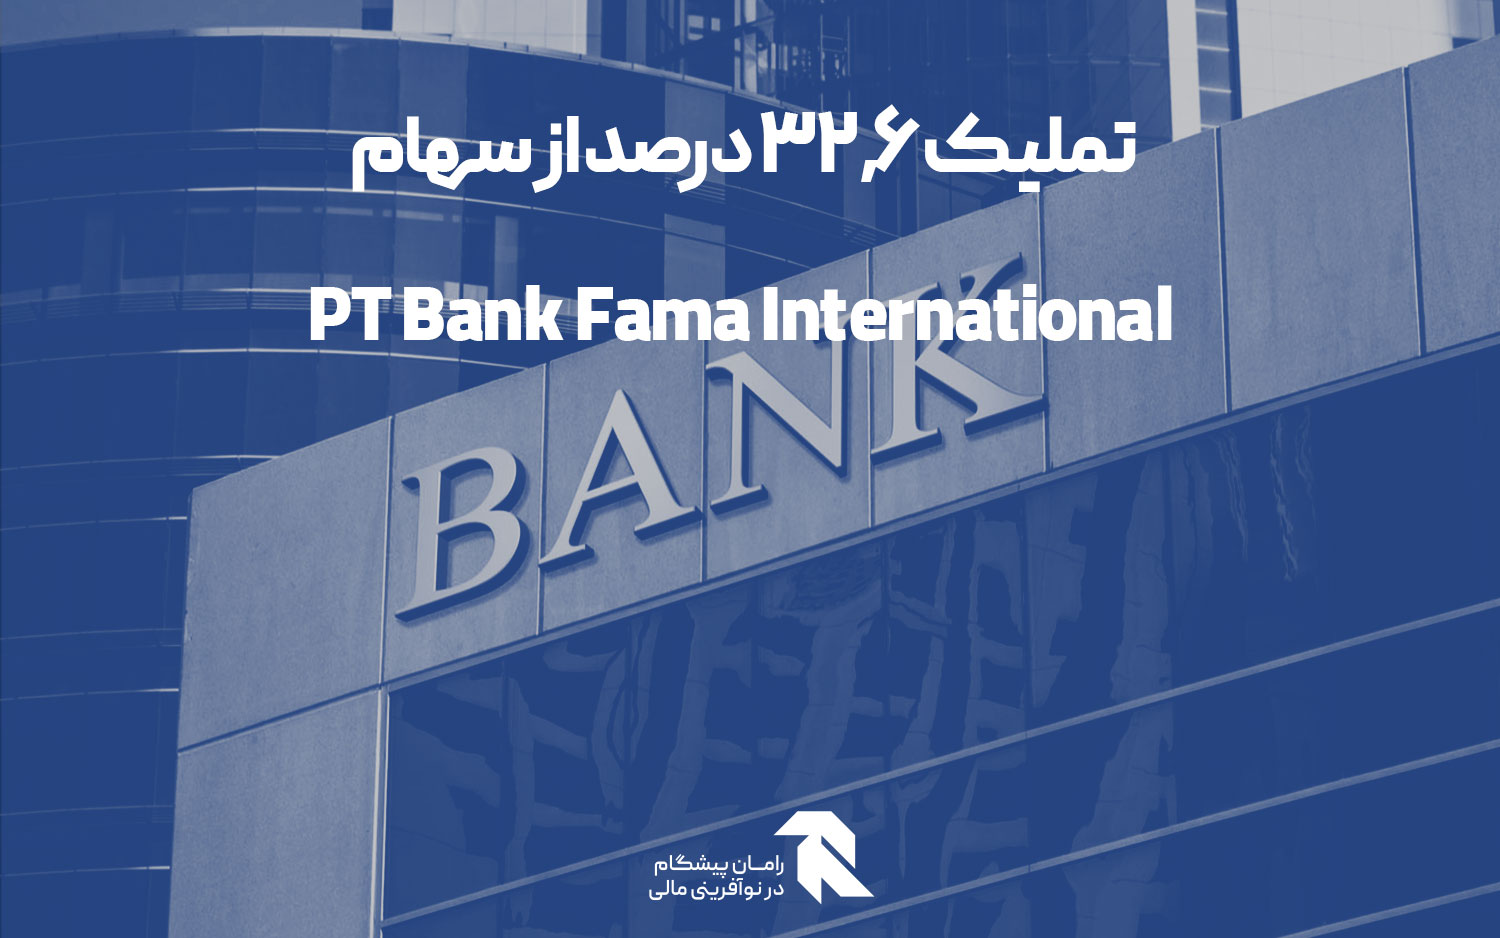 تملیک 32.6 درصد از سهام PT Bank Fama International